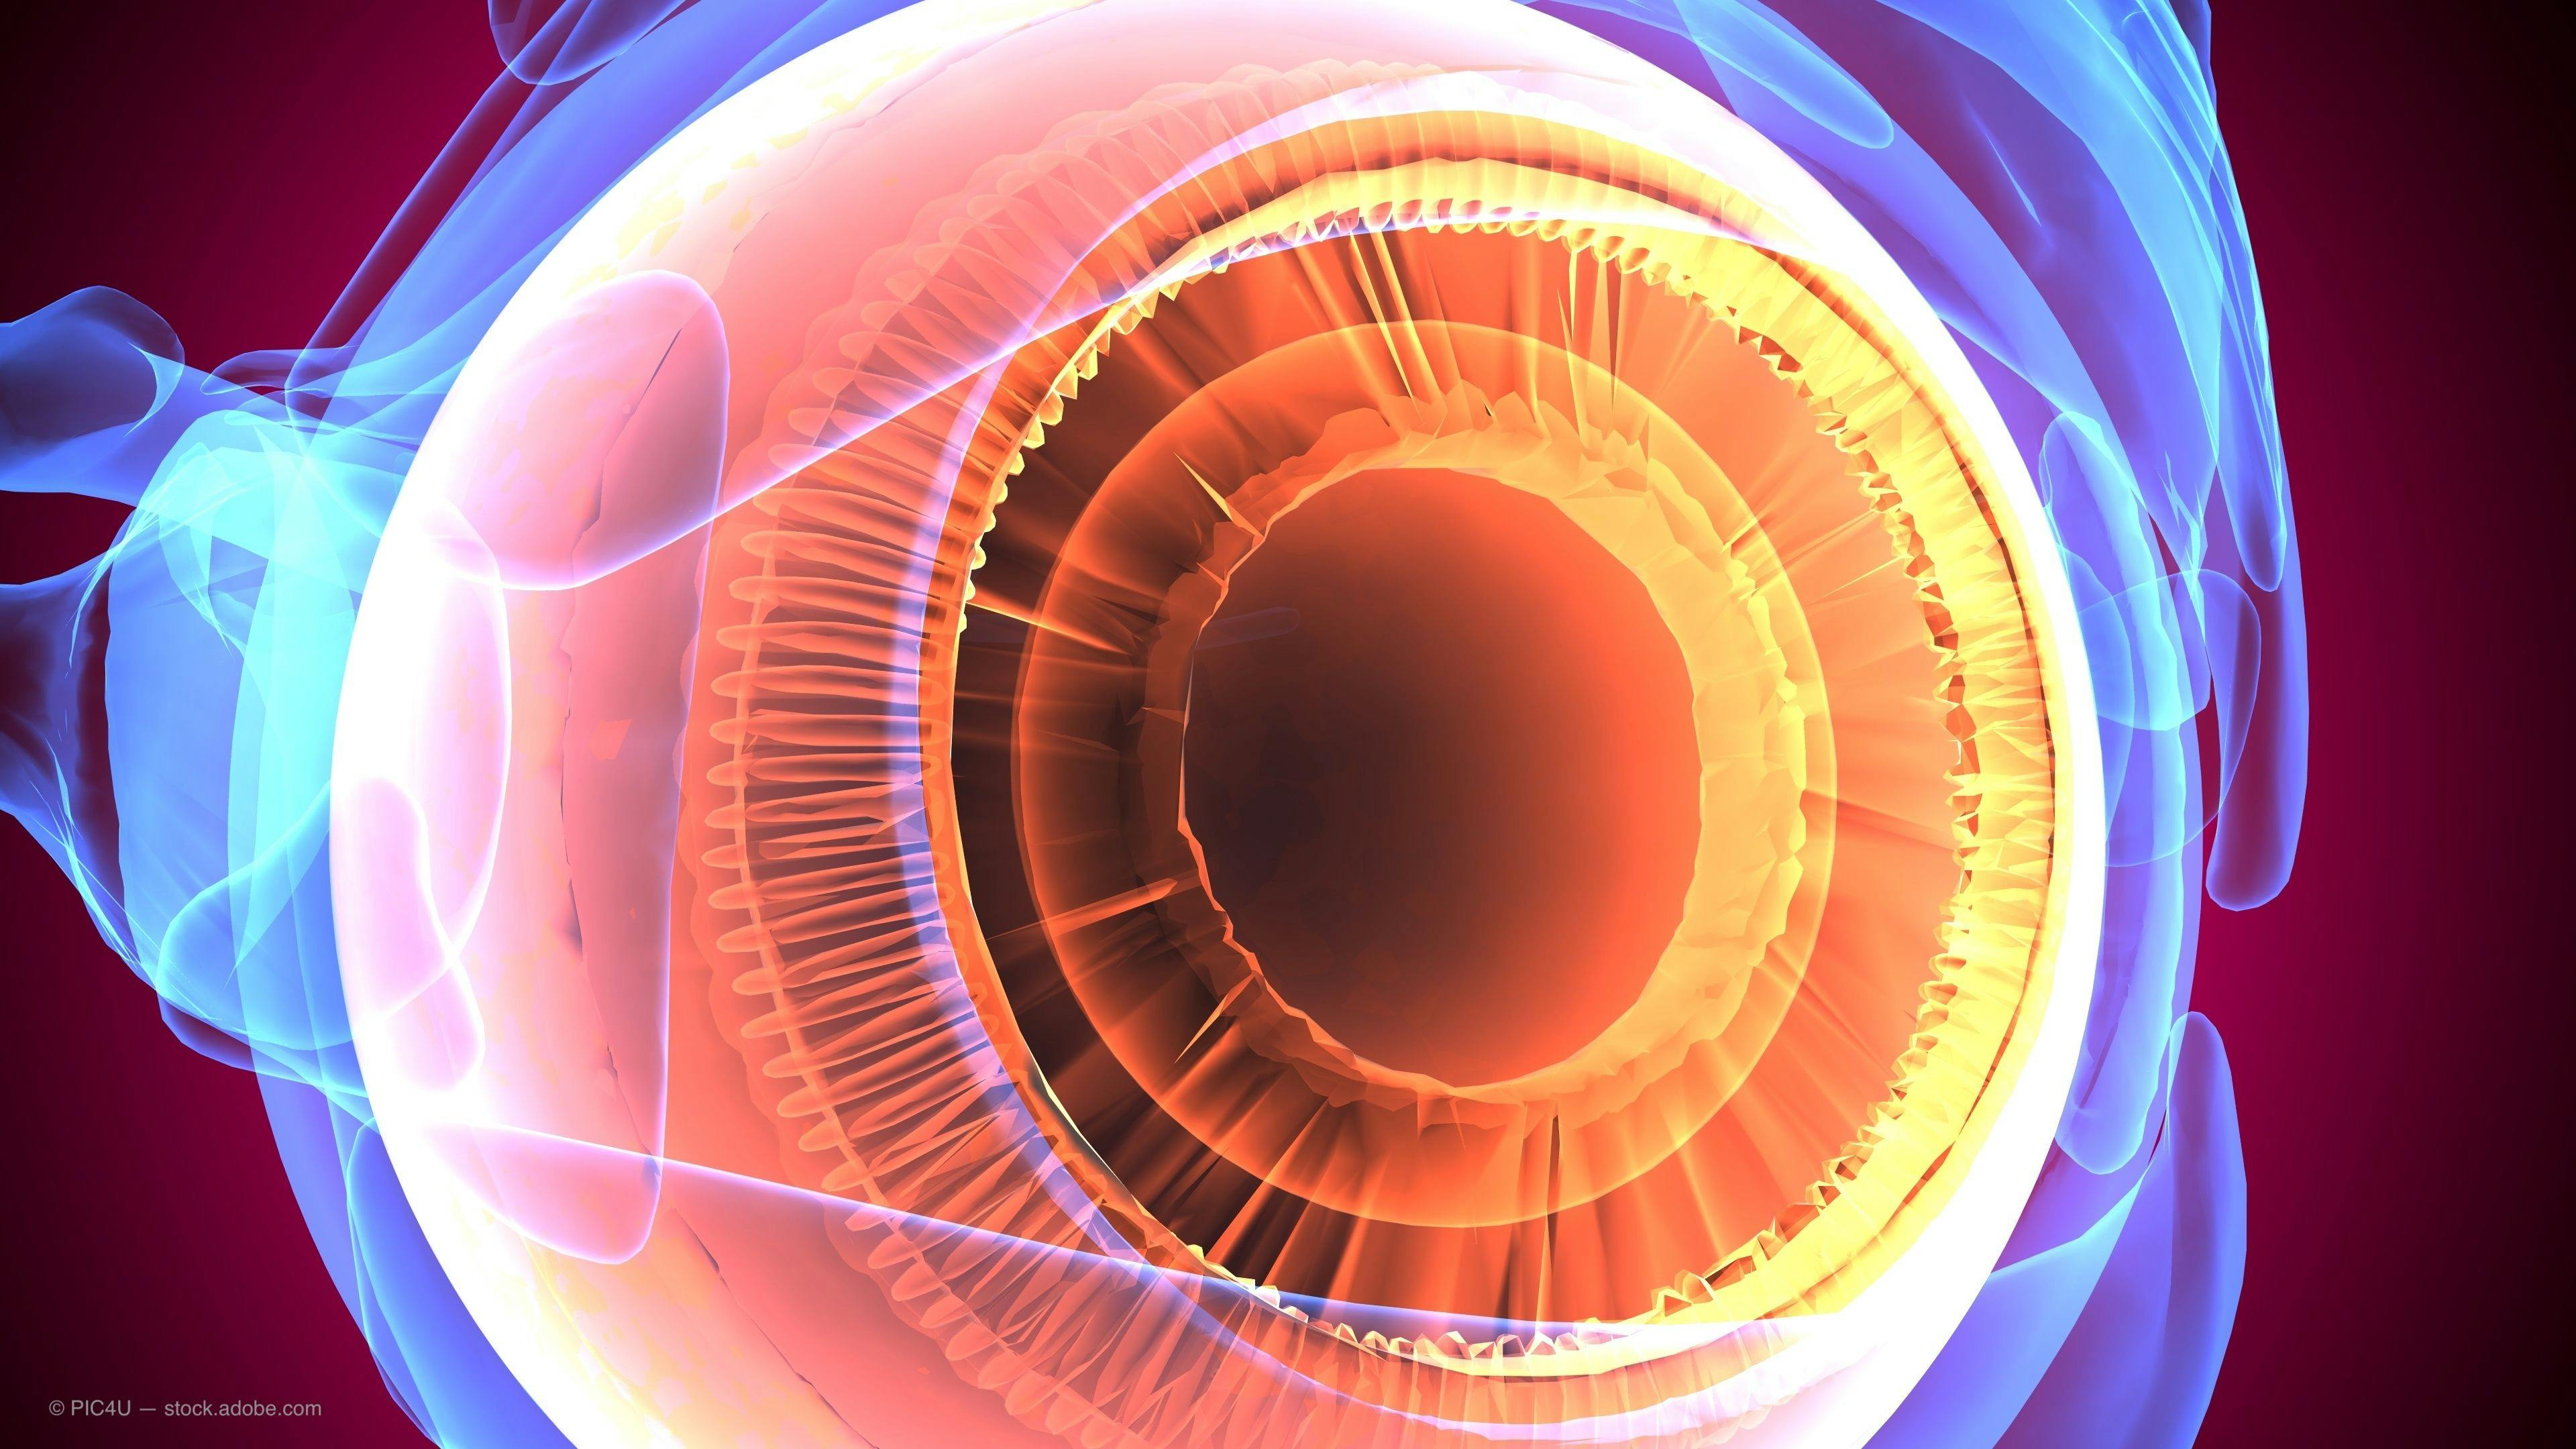 Patient glaucoma management focuses on pivotal studies